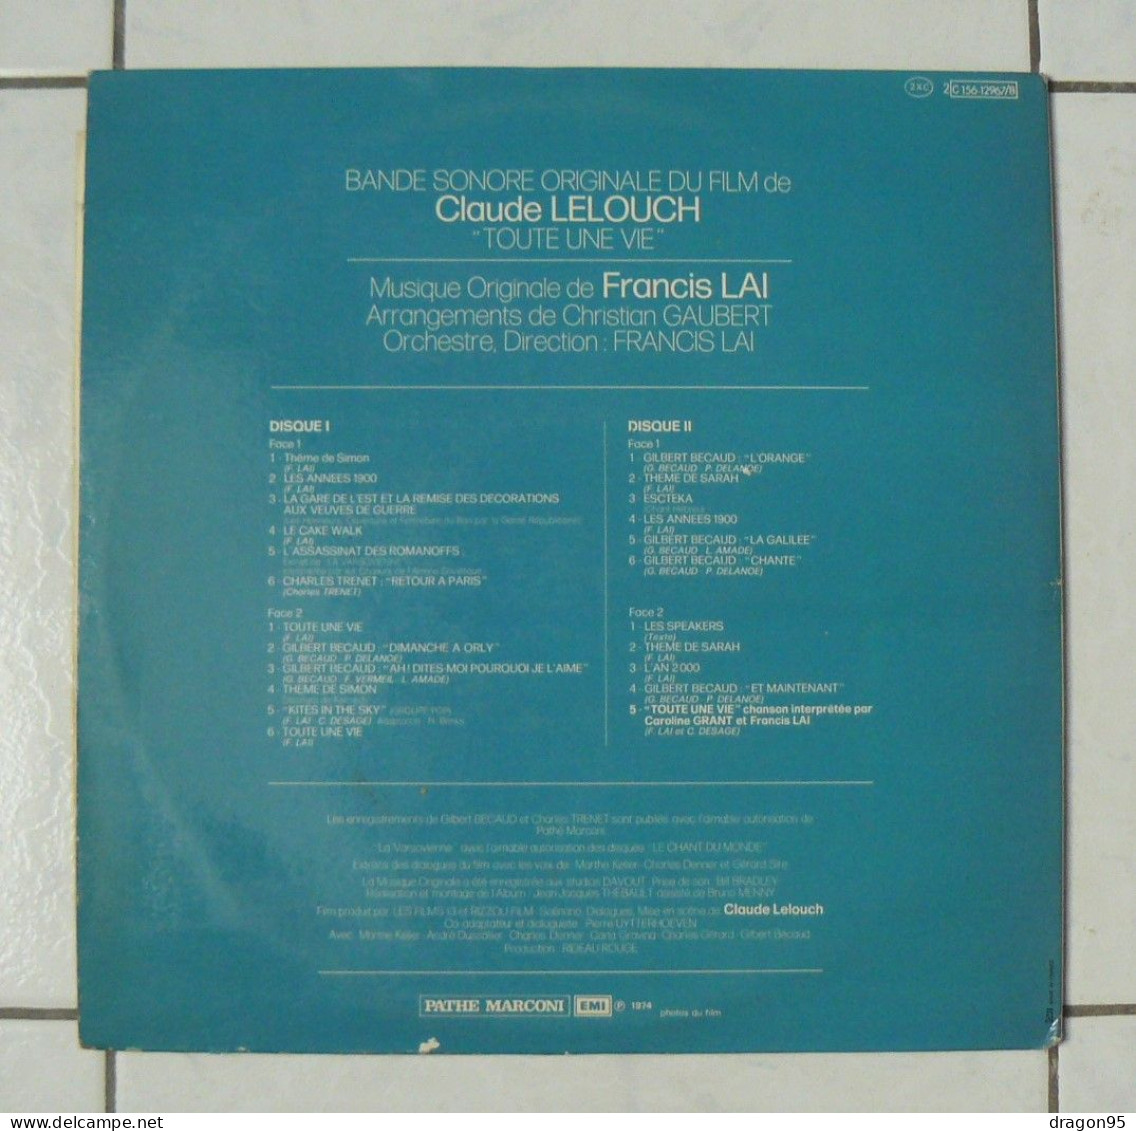 2 LPs Francis LAI : B.O. Toute Une Vie - Pathé 2C156-12967/8 - France - 1974 - Filmmuziek